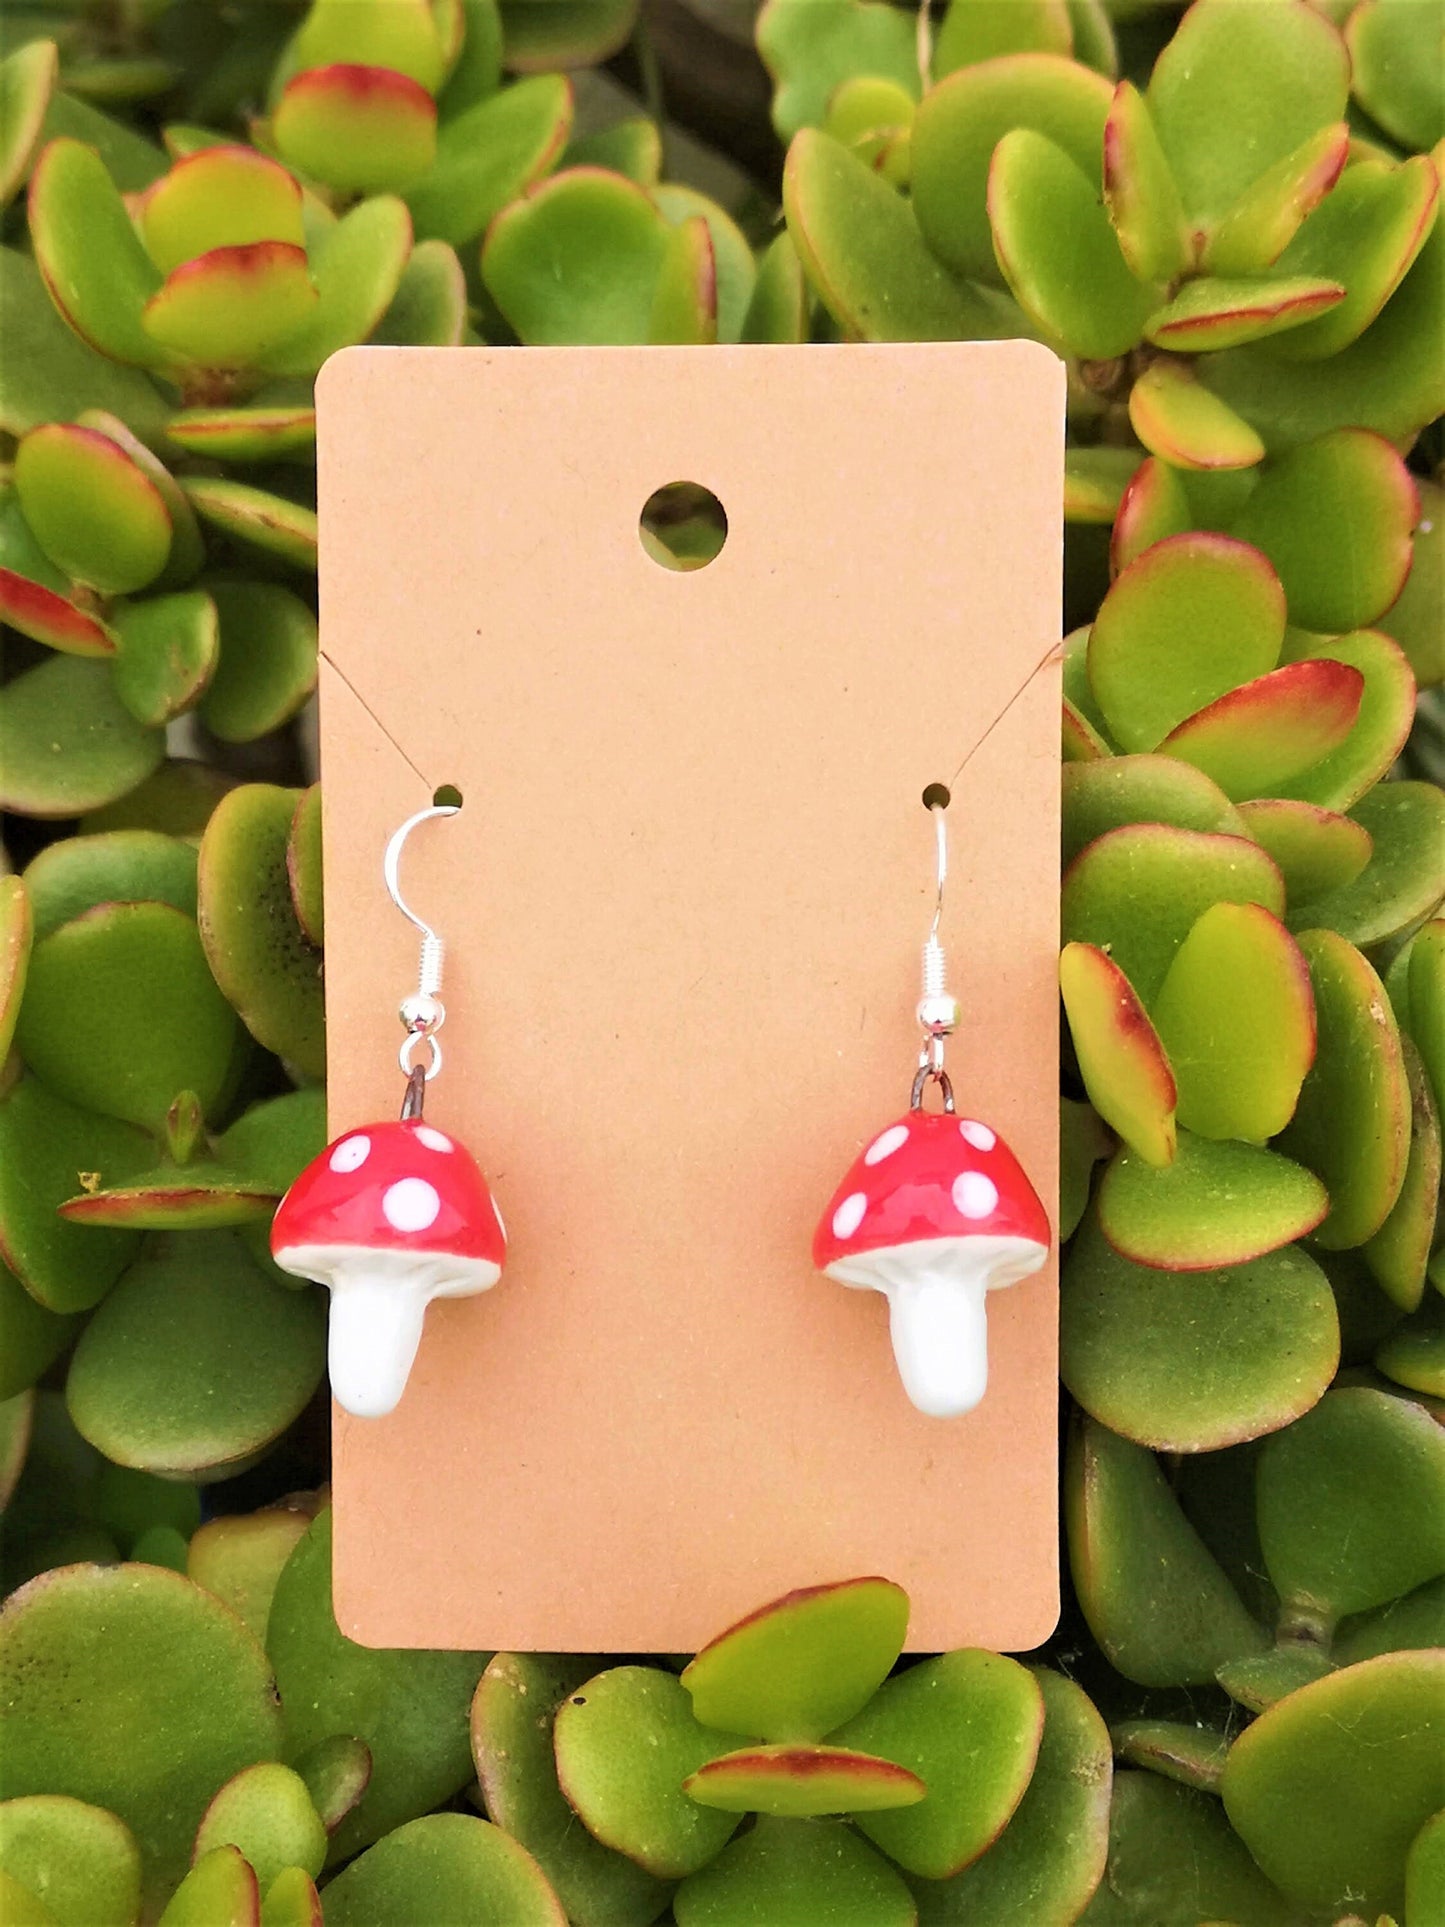 Handmade Ceramic Red Mushroom Earrings For Women, Cottagecore Artisan Jewelry Gift For Her, Best Boho Sterling Silver Cute Dangle Earrings - Ceramica Ana Rafael